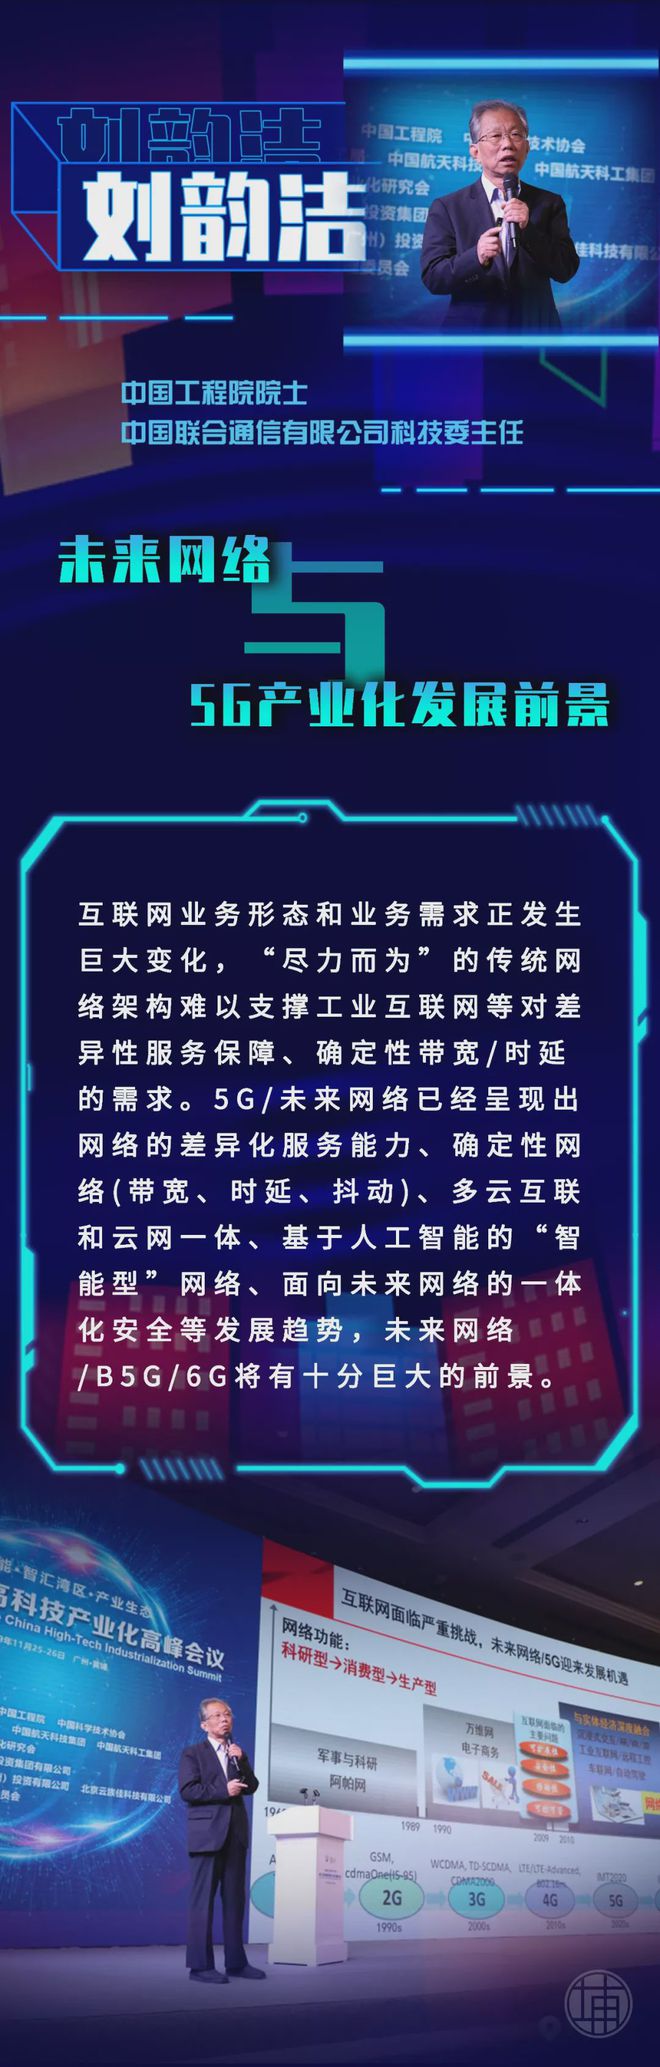 深圳5G网络专家：聚焦技术革新与未来展望的全球热点  第2张